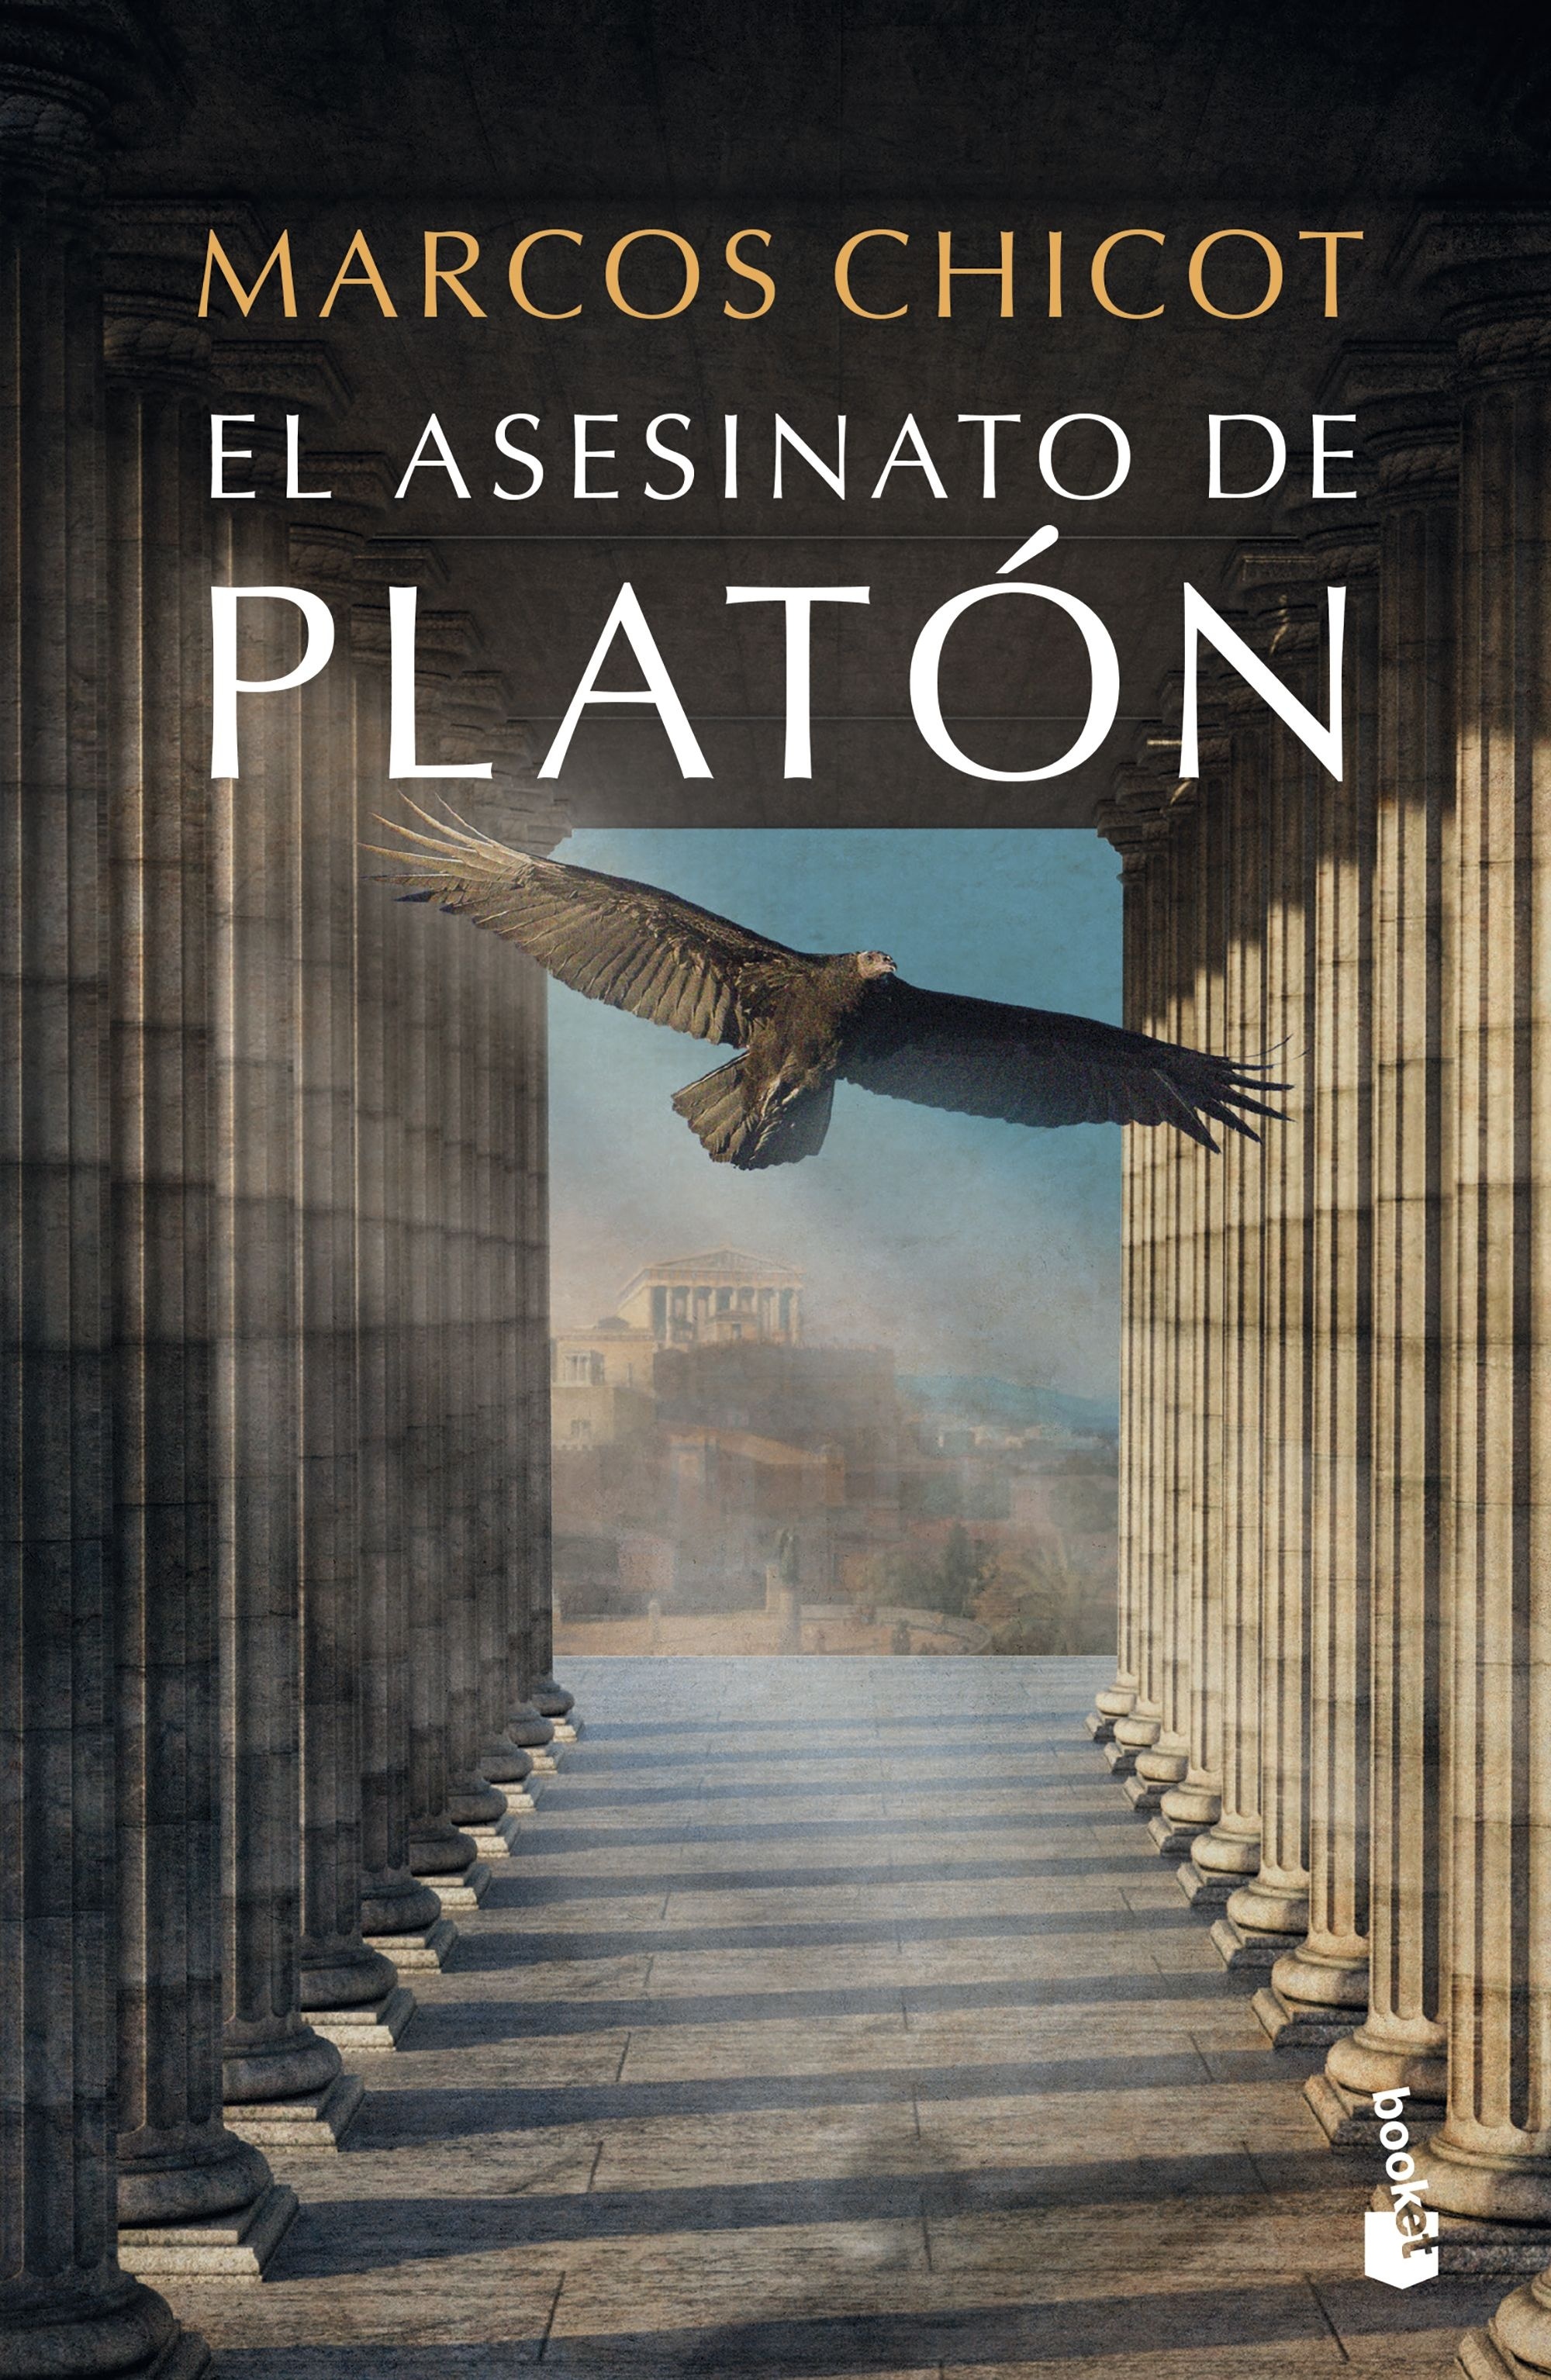 Asesinato de Platón, El